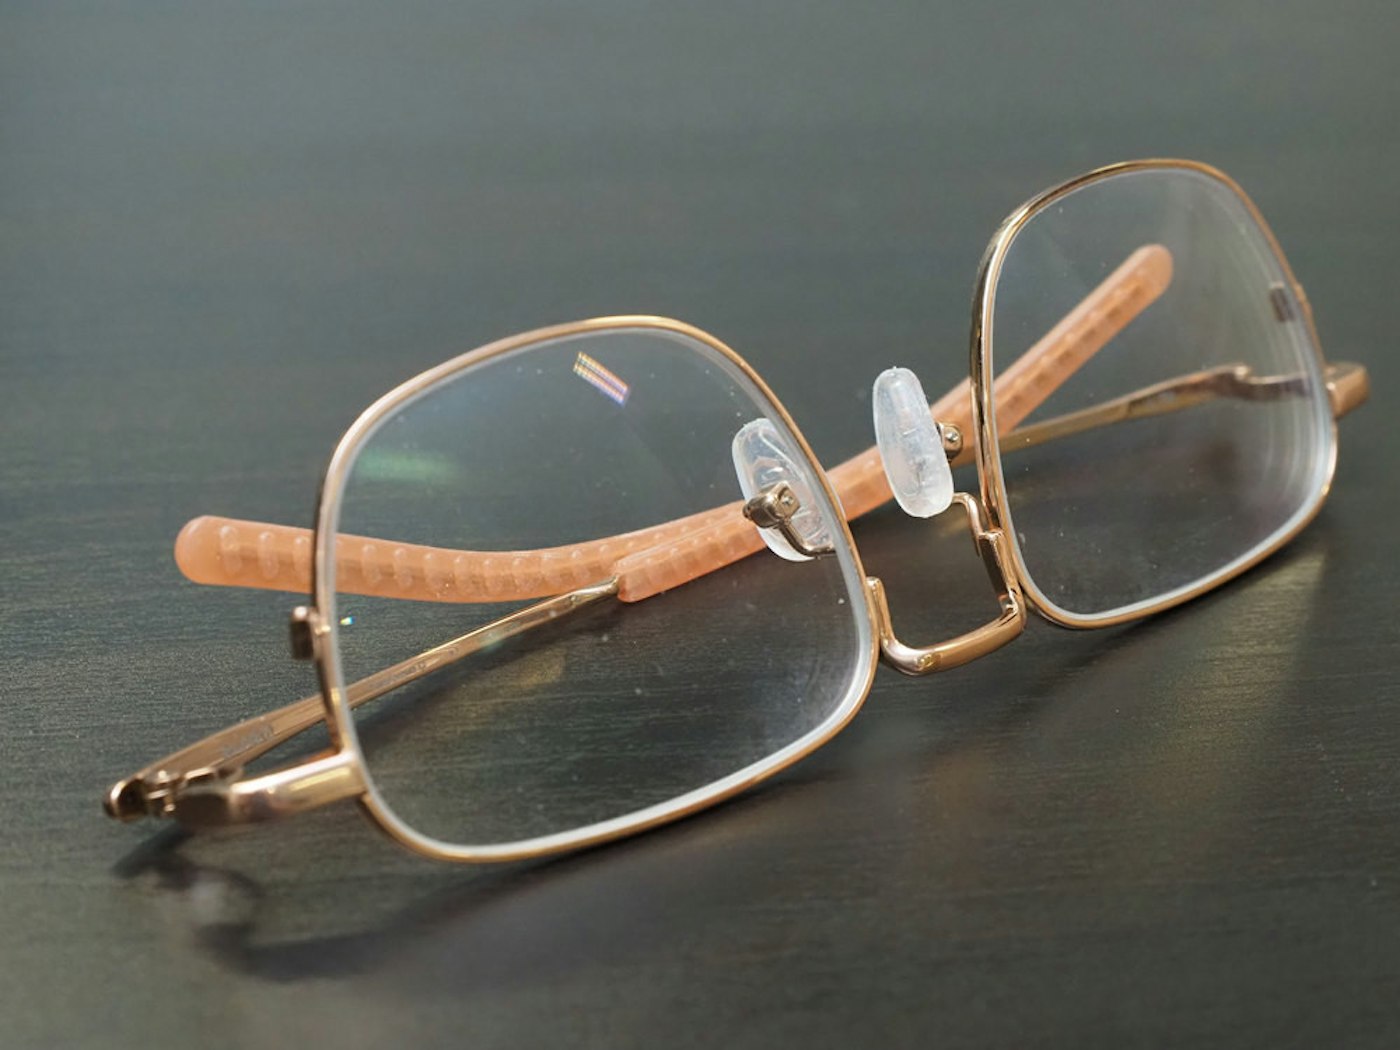 以模組化鏡腳 氣墊鼻墊符合亞洲人臉型的平價鈦框眼鏡 Sums 平價鈦框眼鏡搶先版體驗心得 鏡框 Cool3c